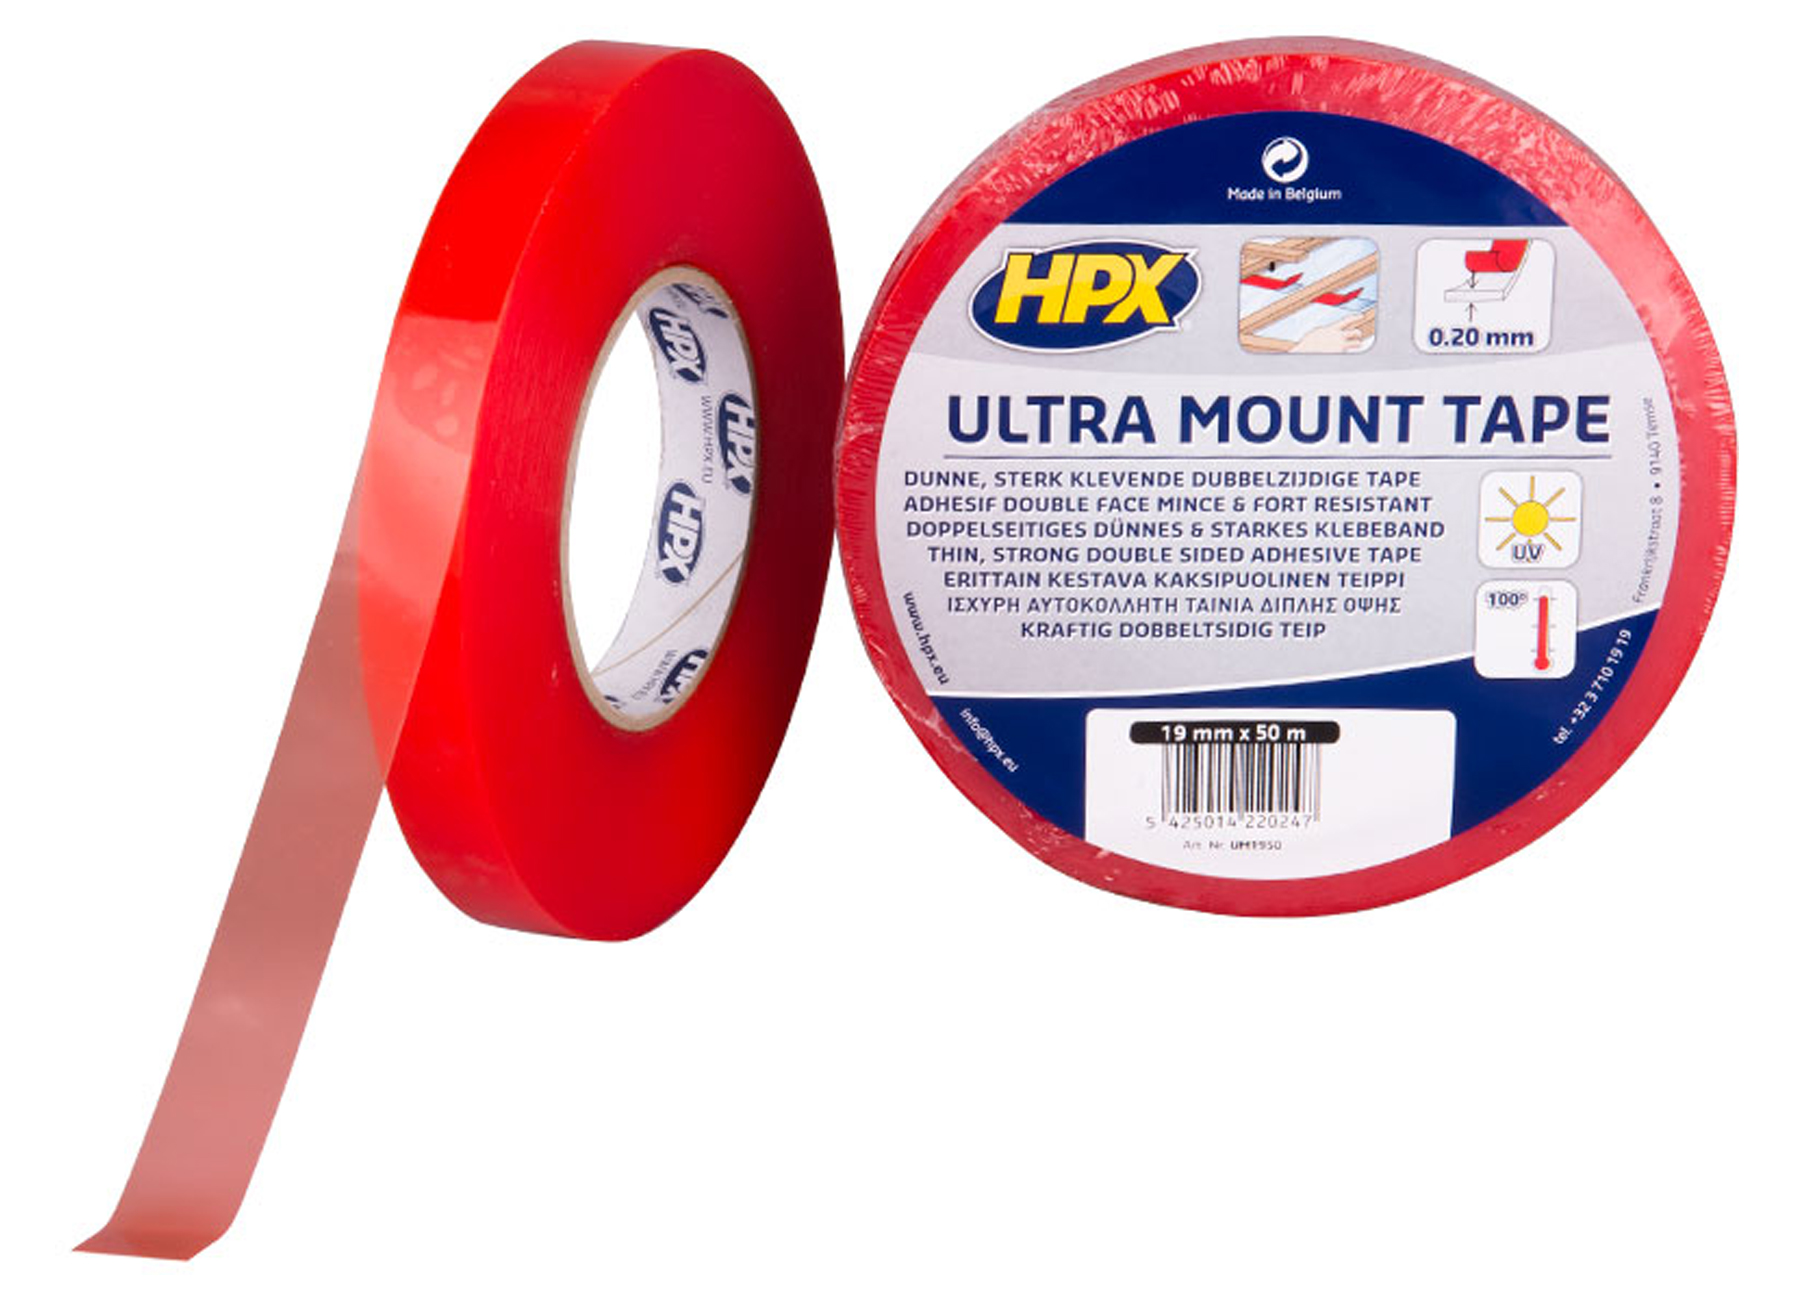 HPX ULTRA MOUNT RUBAN DE FIXATION - TRANSPARENT 19MMX50M